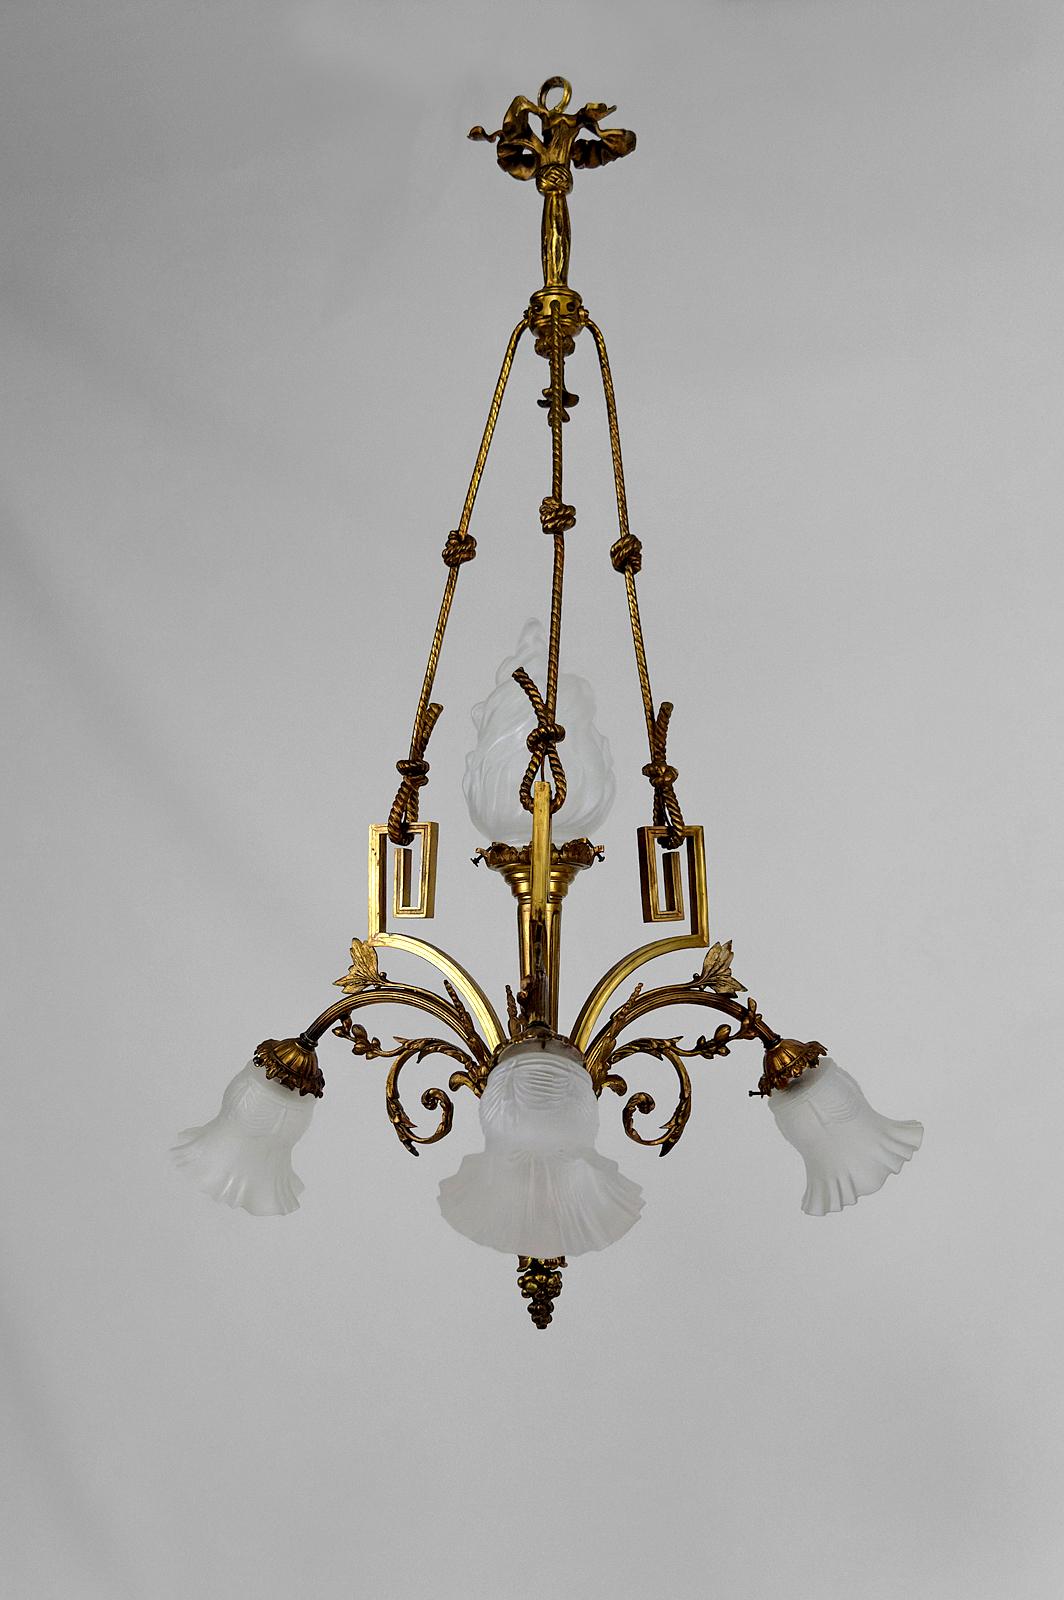 Superbe lustre de style néoclassique / Louis XVI.
France, Circa 1900.
4 lampes.
En bronze doré avec des motifs floraux, des raisins, des torches, des nœuds de corde.
Belle verrerie : flamme sur le luminaire central, drapé de tulipes.

Bon